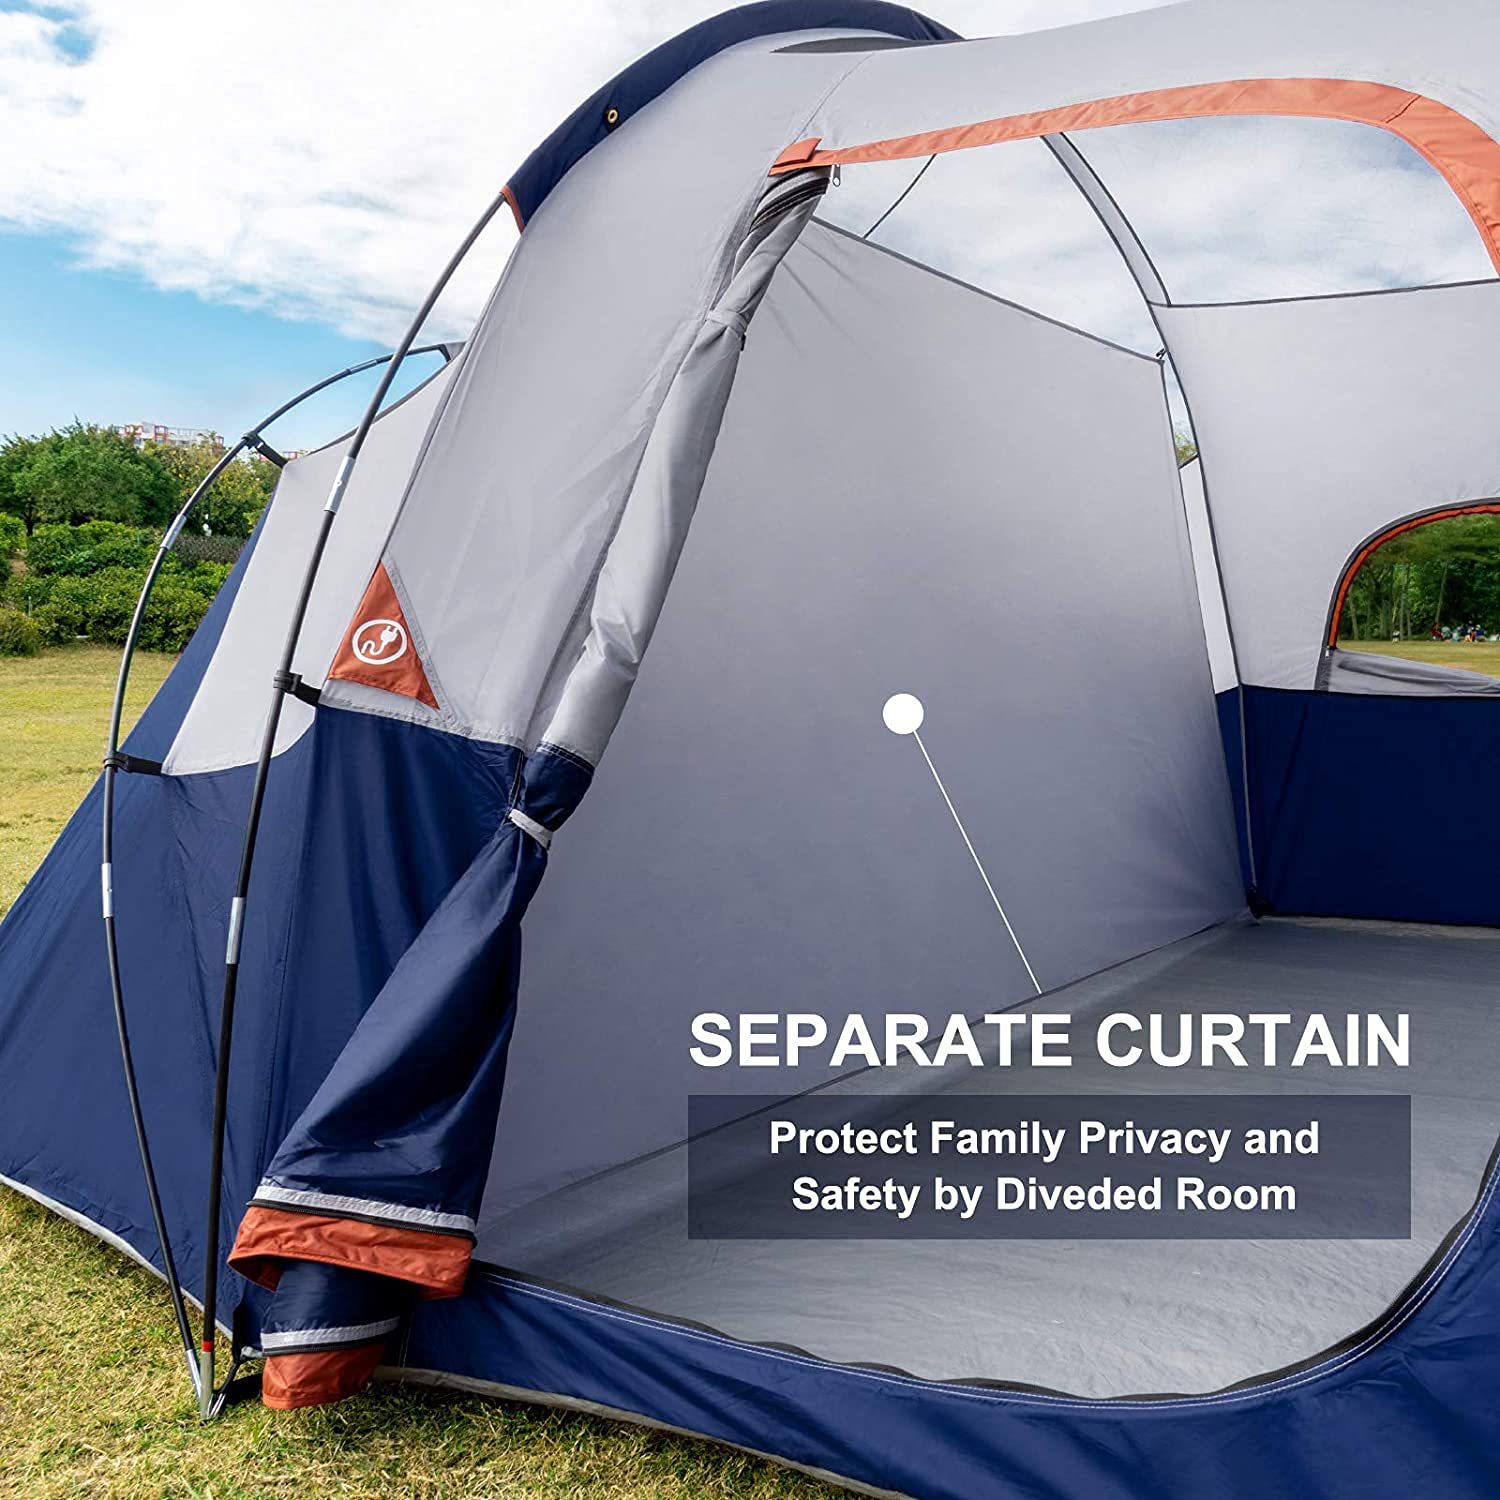 tent-8-Person-Camping-Tents, tent ຄອບຄົວກັນລົມກັນນ້ໍາ, 5 ຕາຫນ່າງປ່ອງຢ້ຽມຂະຫນາດໃຫຍ່, ຊັ້ນສອງ, ຜ້າມ່ານແບ່ງອອກສໍາລັບຫ້ອງແຍກຕ່າງຫາກ, Portable ກັບຖົງພົກພາ